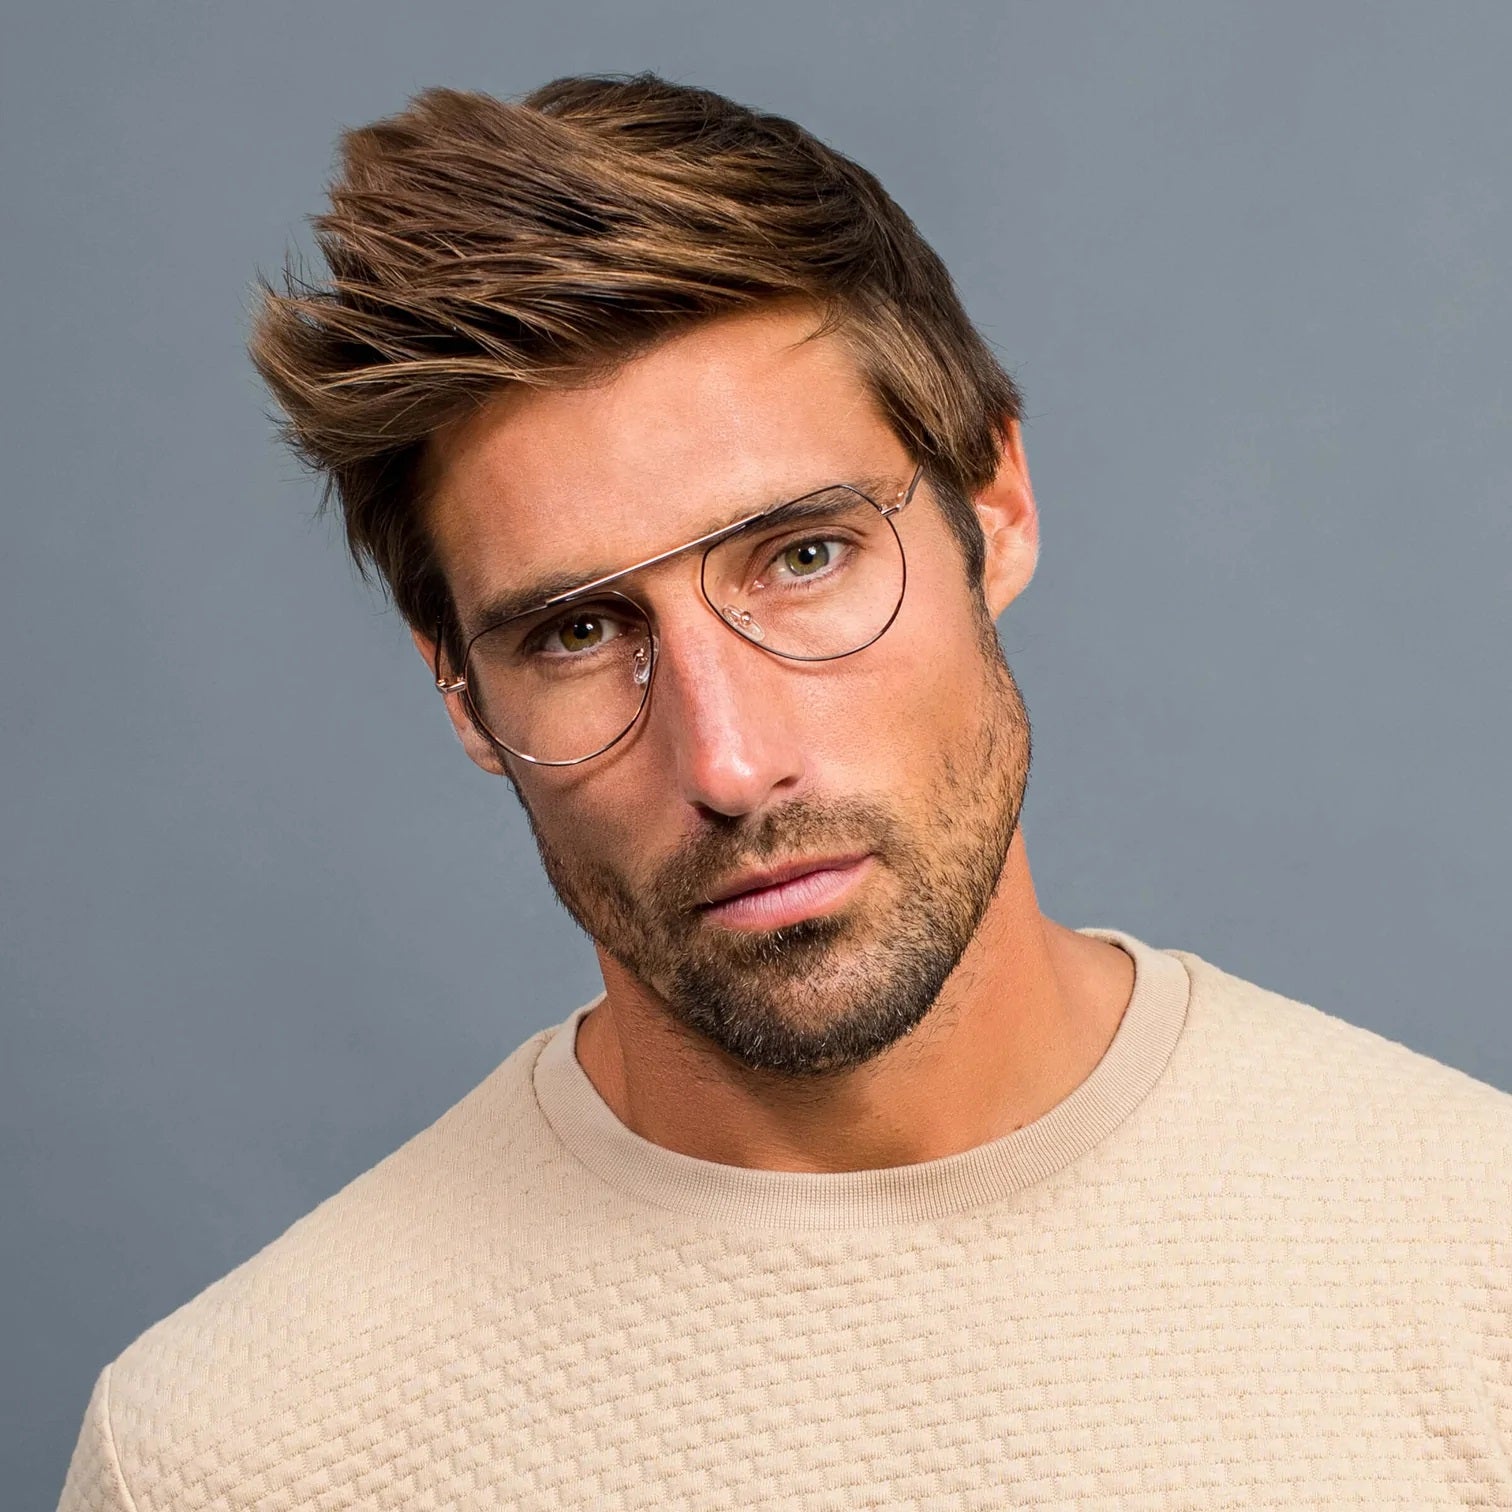 Oversized Glasses Frames Women Men With Prescription or Non 